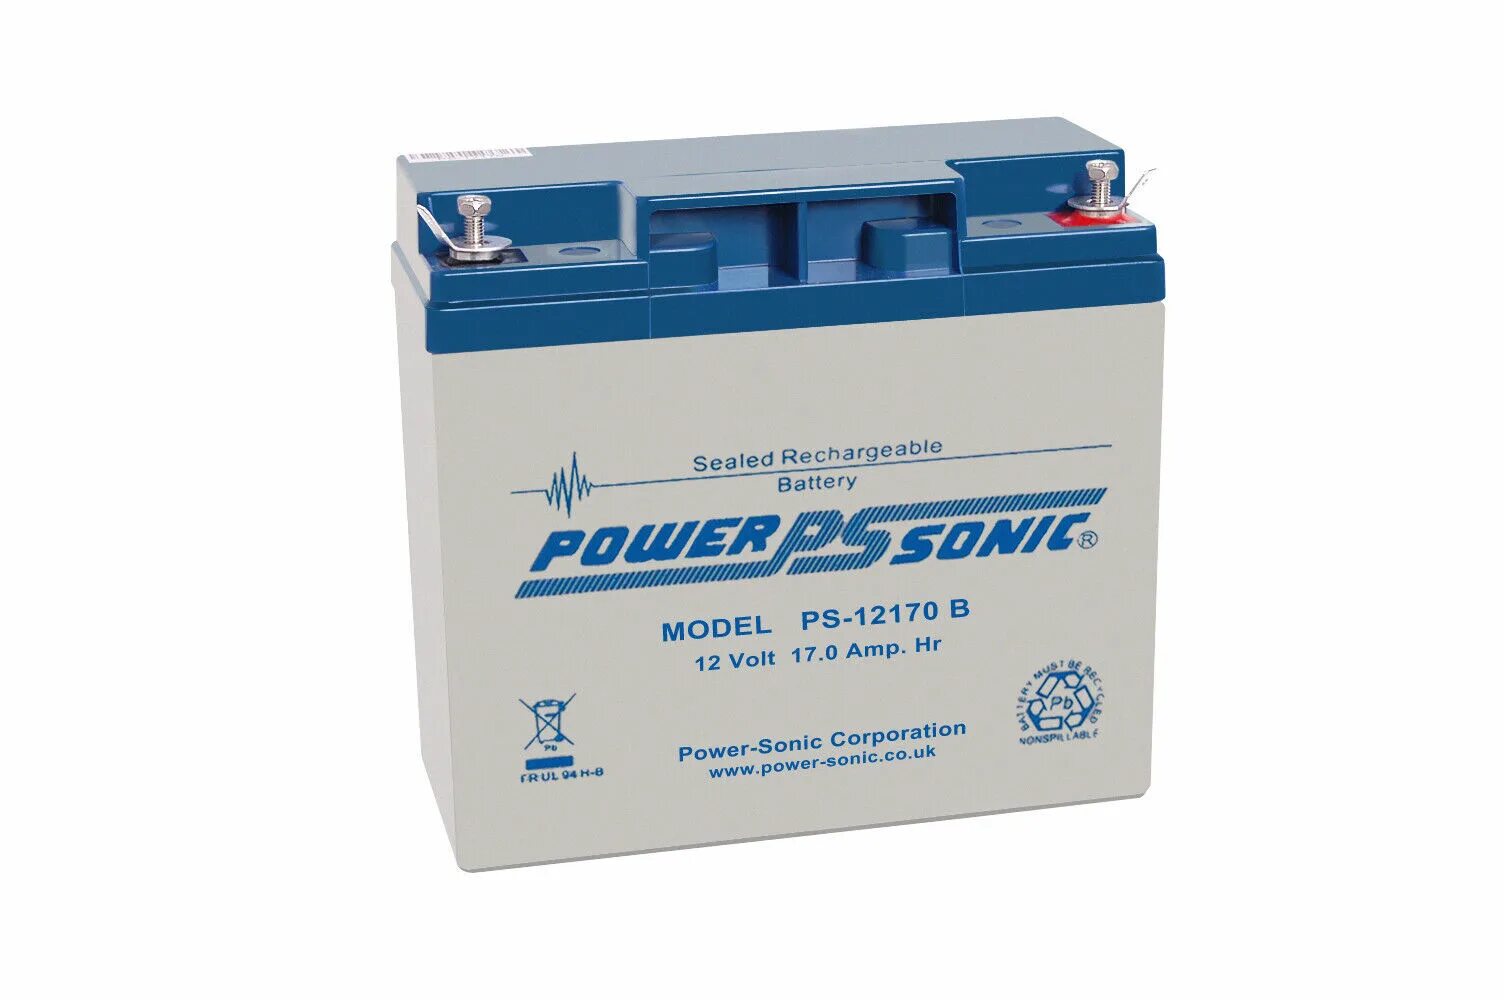 Аккумулятор Daewoo SP Battery 12v 9ah. Аккумулятор Power Sonic PS-1212 12v, 1.4. Lead acid 12 v 5ah аккумулятор. Daewoo SP Battery аккумулятор 12v 32ah t6. 12 v battery